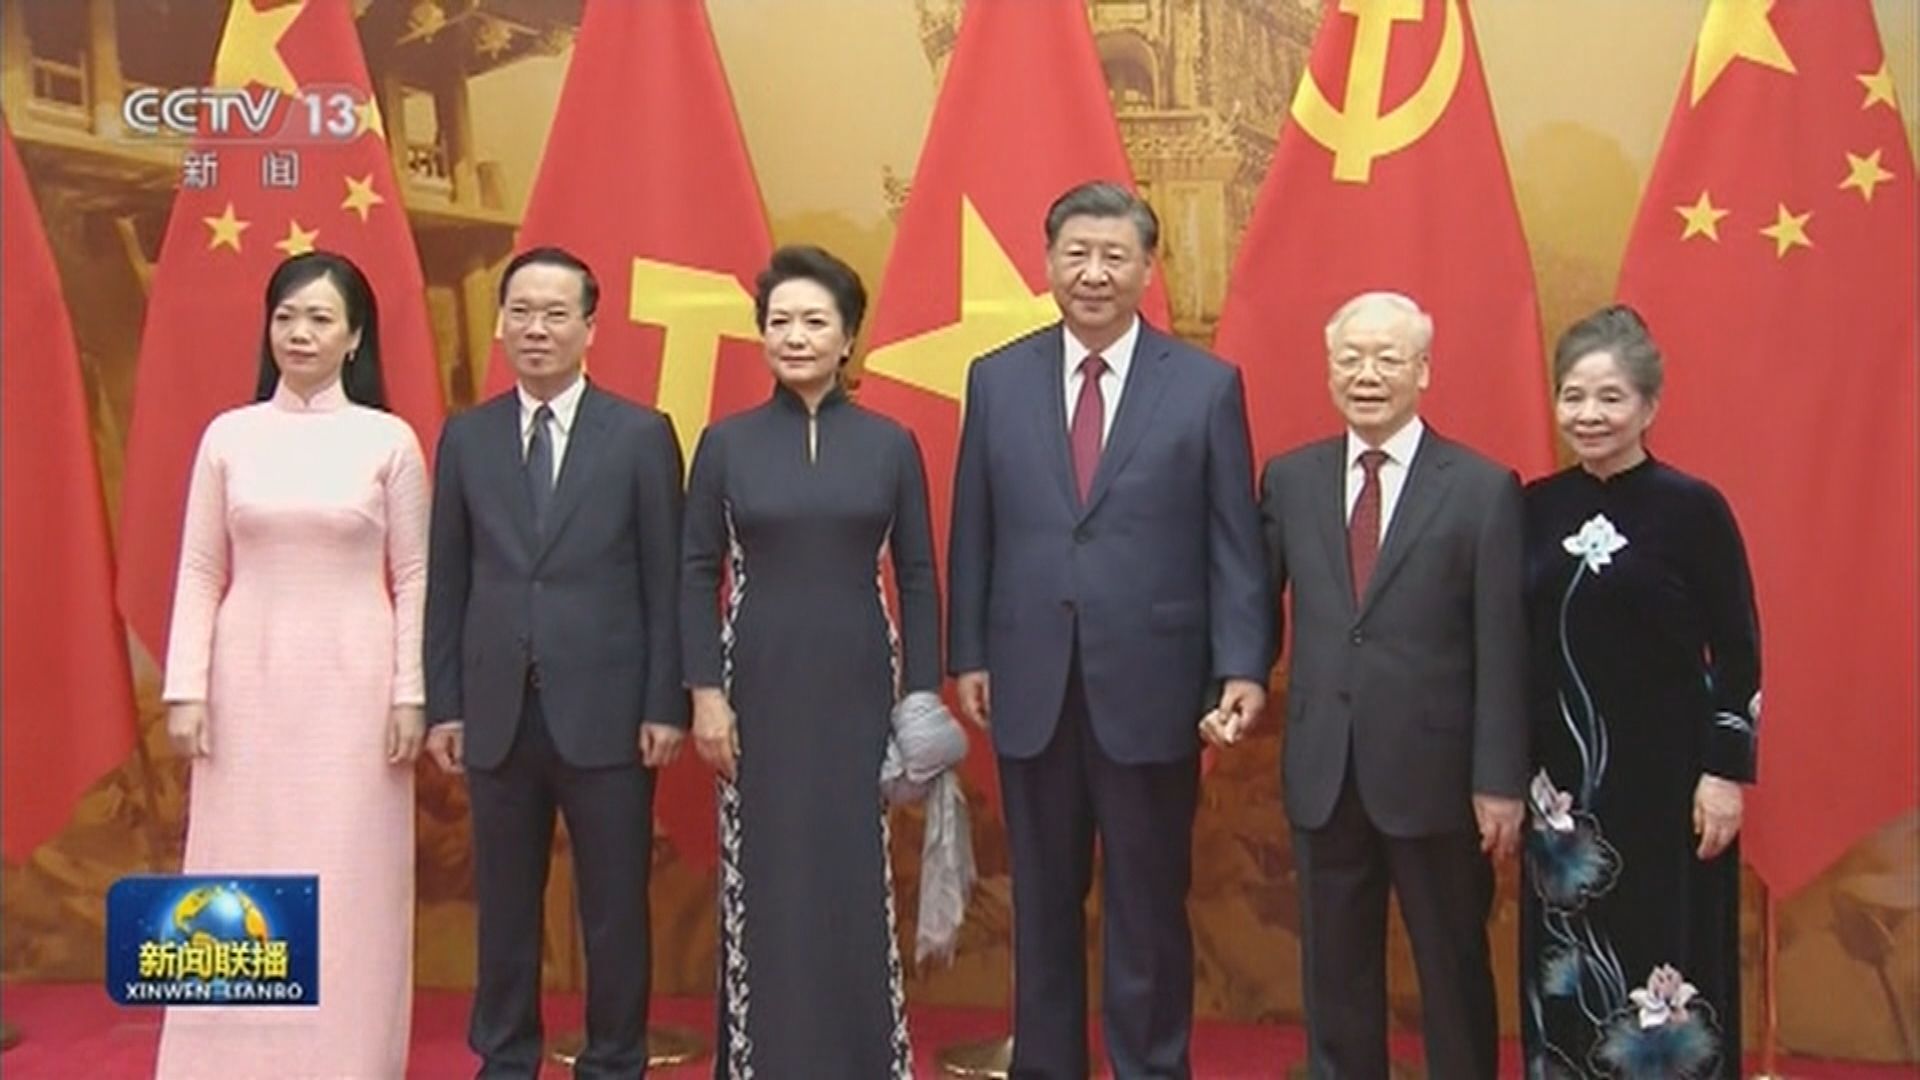 習近平訪越南晤國家主席武文賞等領導人 中越發表聯合聲明